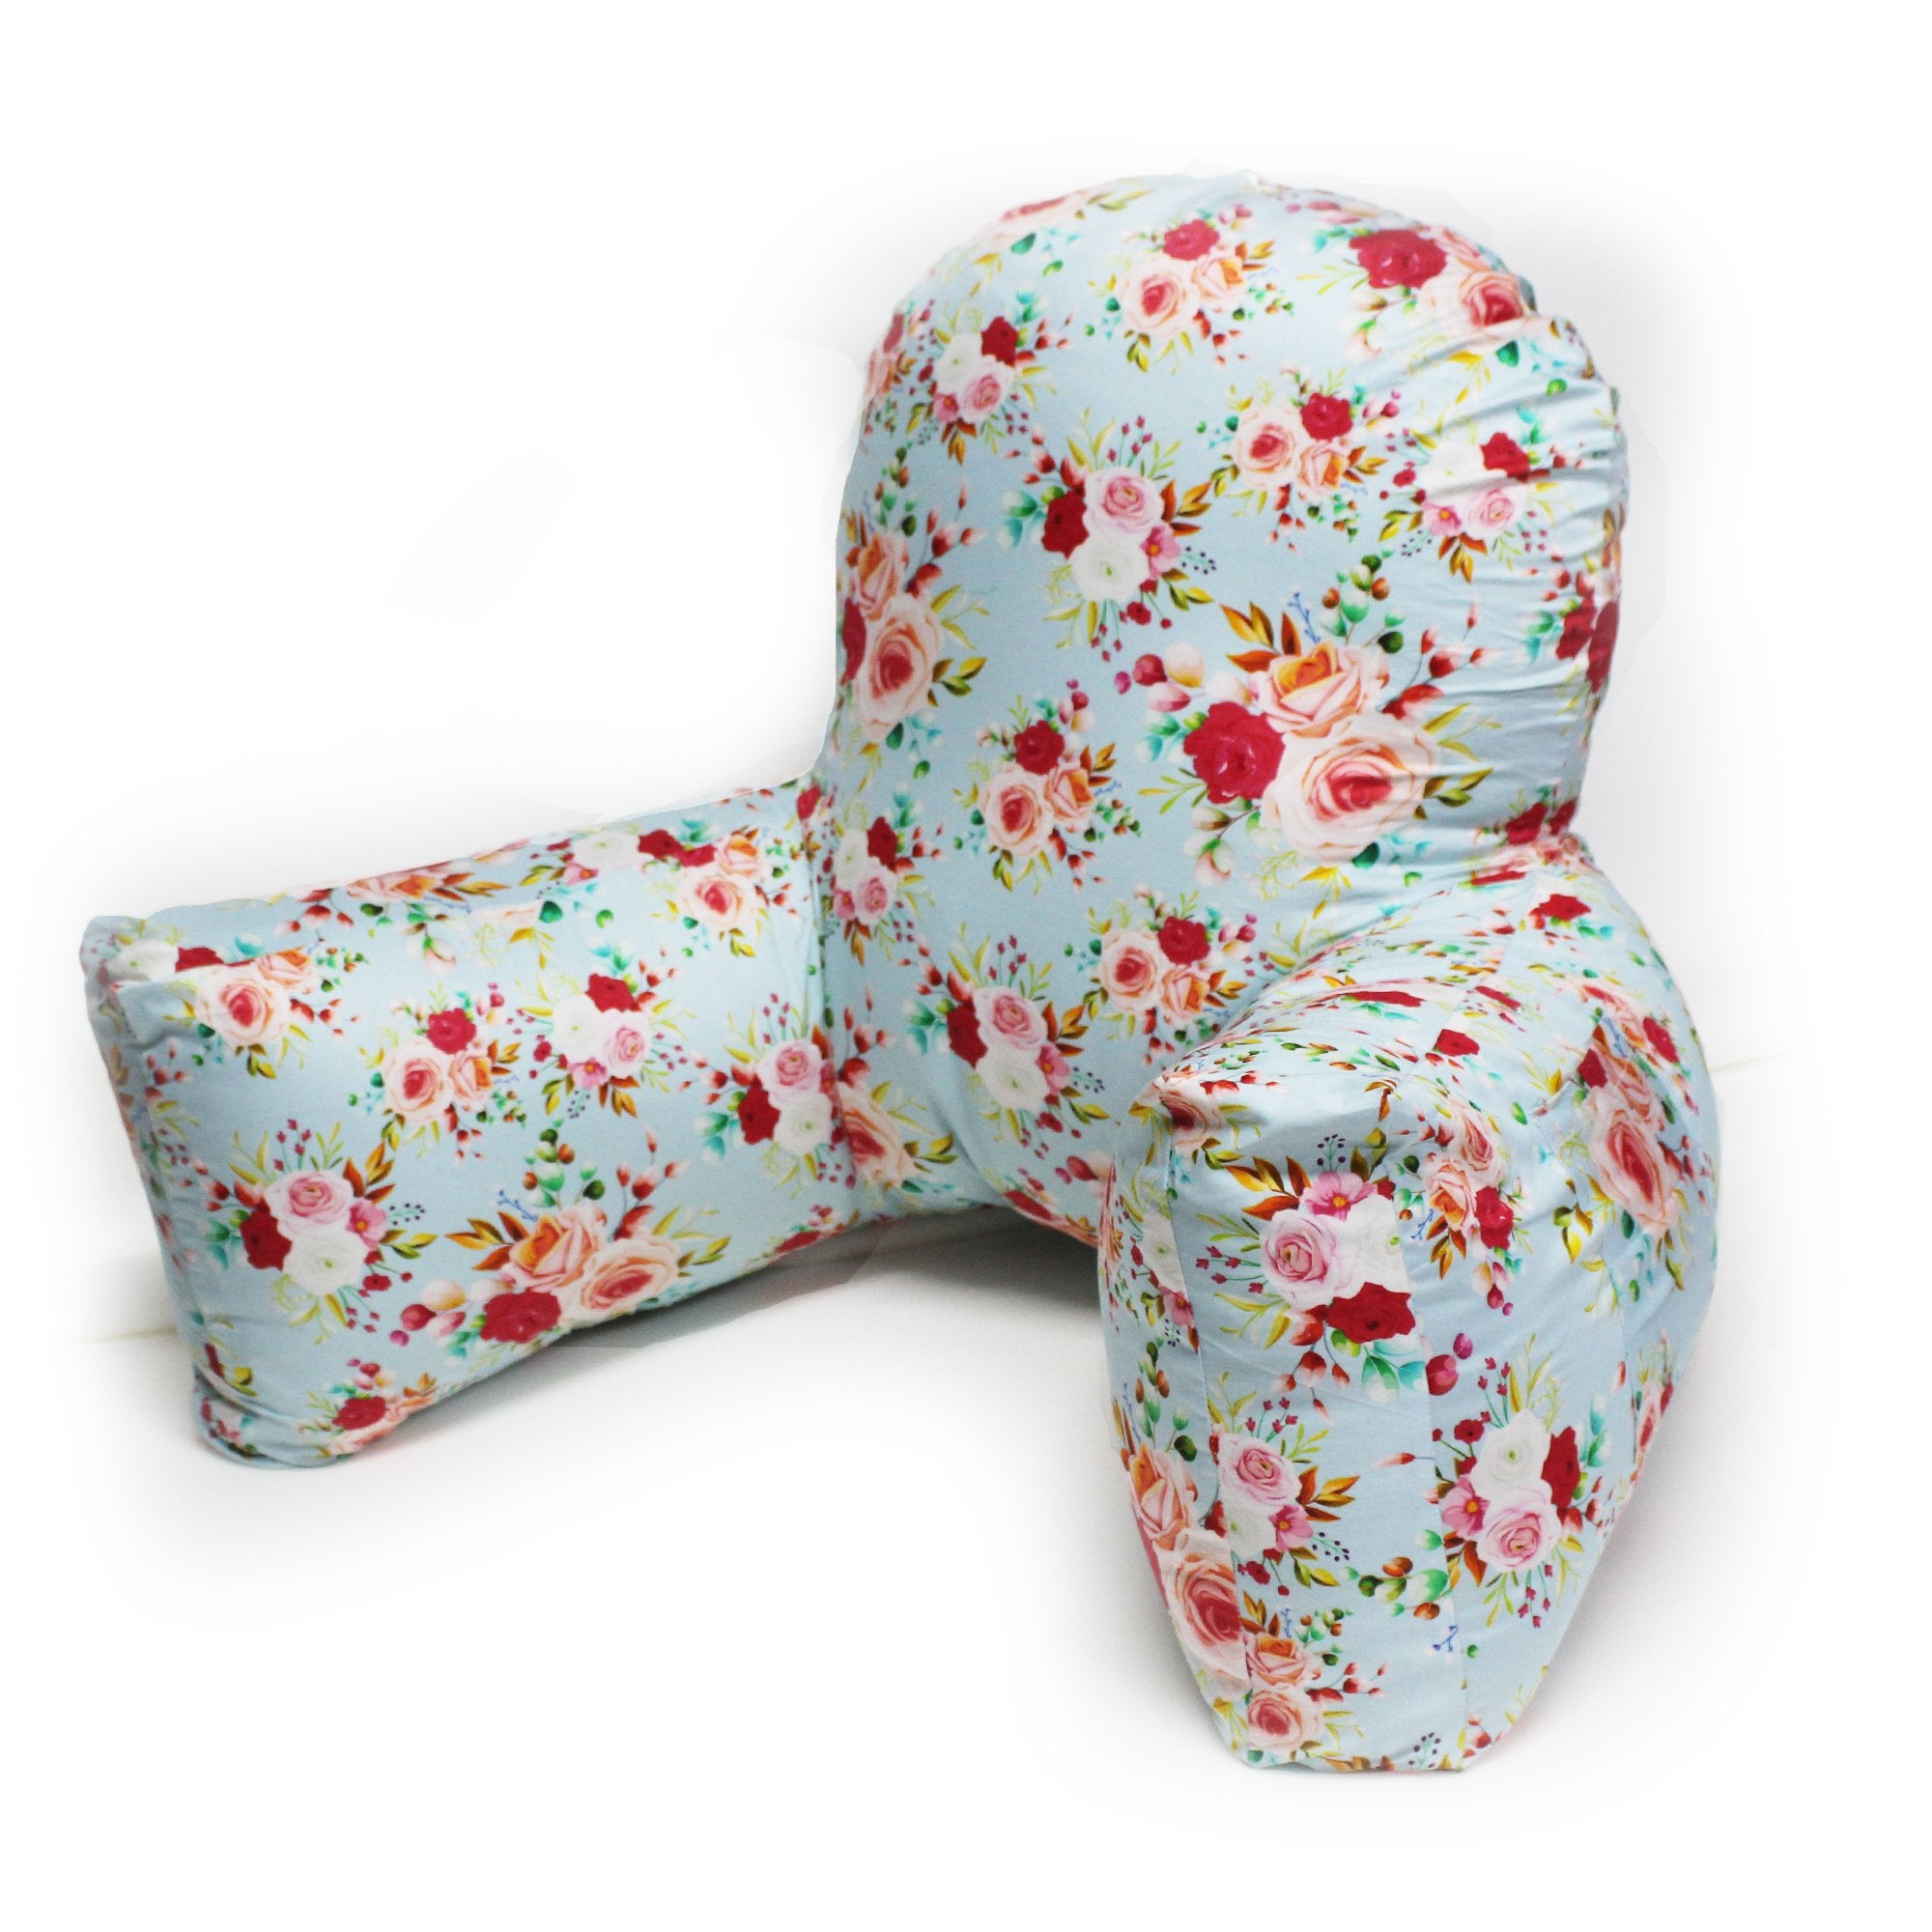 Backrest Pillow | Back Support Cushion | High Armrest - Floral Punch